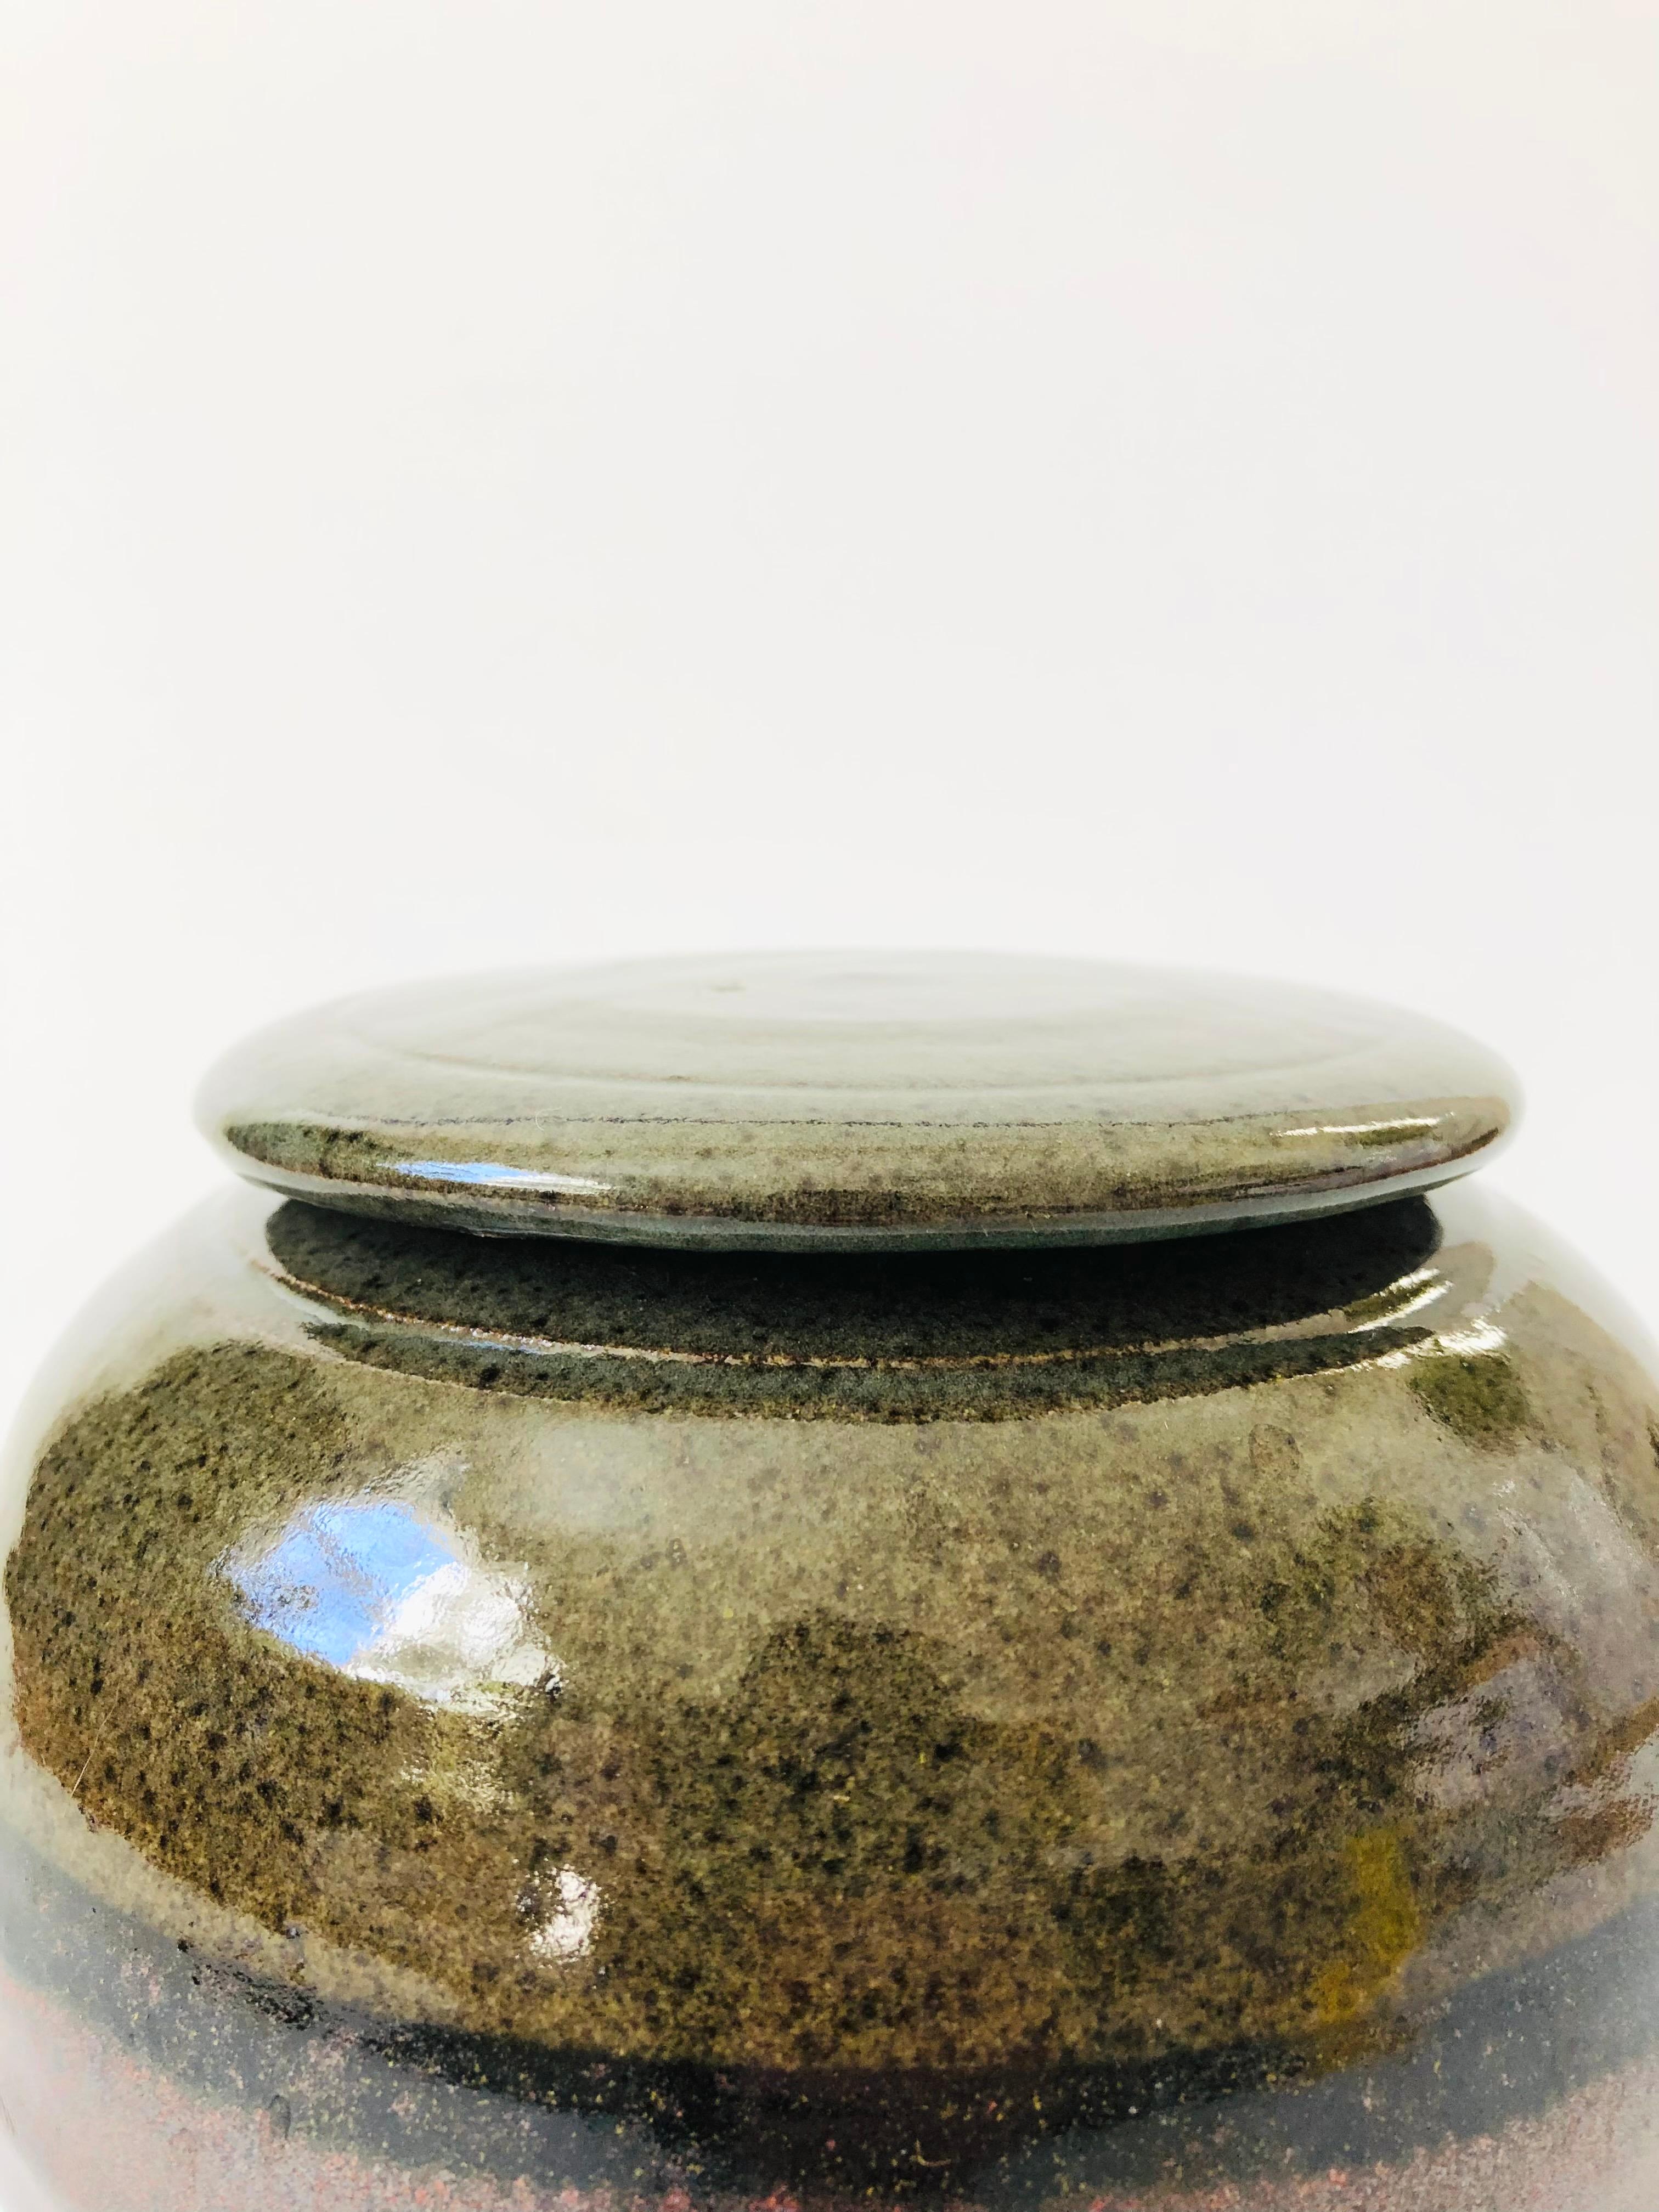 Ein handgefertigter Studio-Keramik-Deckelbehälter im Vintage-Stil. Ausgeführt in zwei erdfarbenen Glasuren. Schöne Kugelform in einer vielseitigen mittleren Größe, perfekt für die Aufbewahrung in der Küche. Signiert auf dem Sockel.

